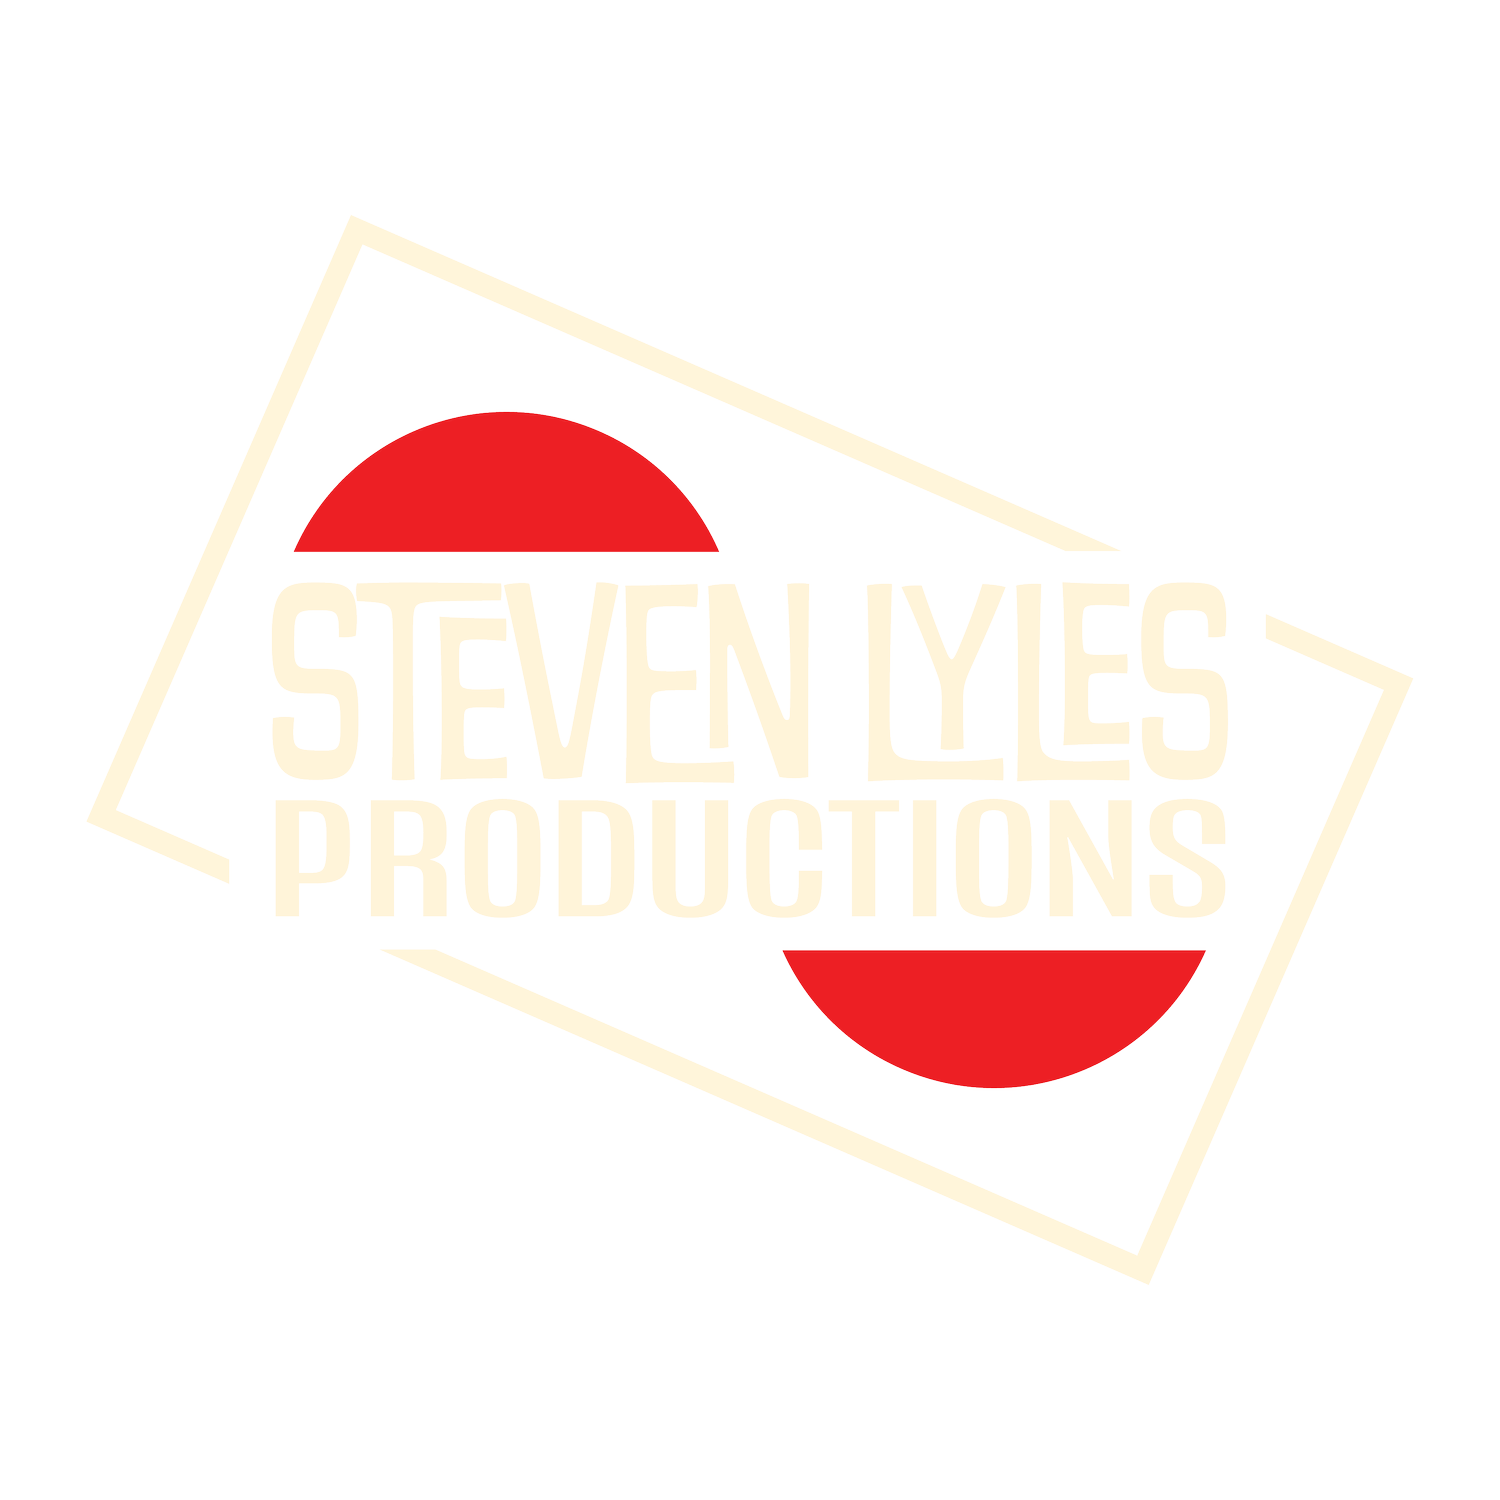 Steven Lyles Productions